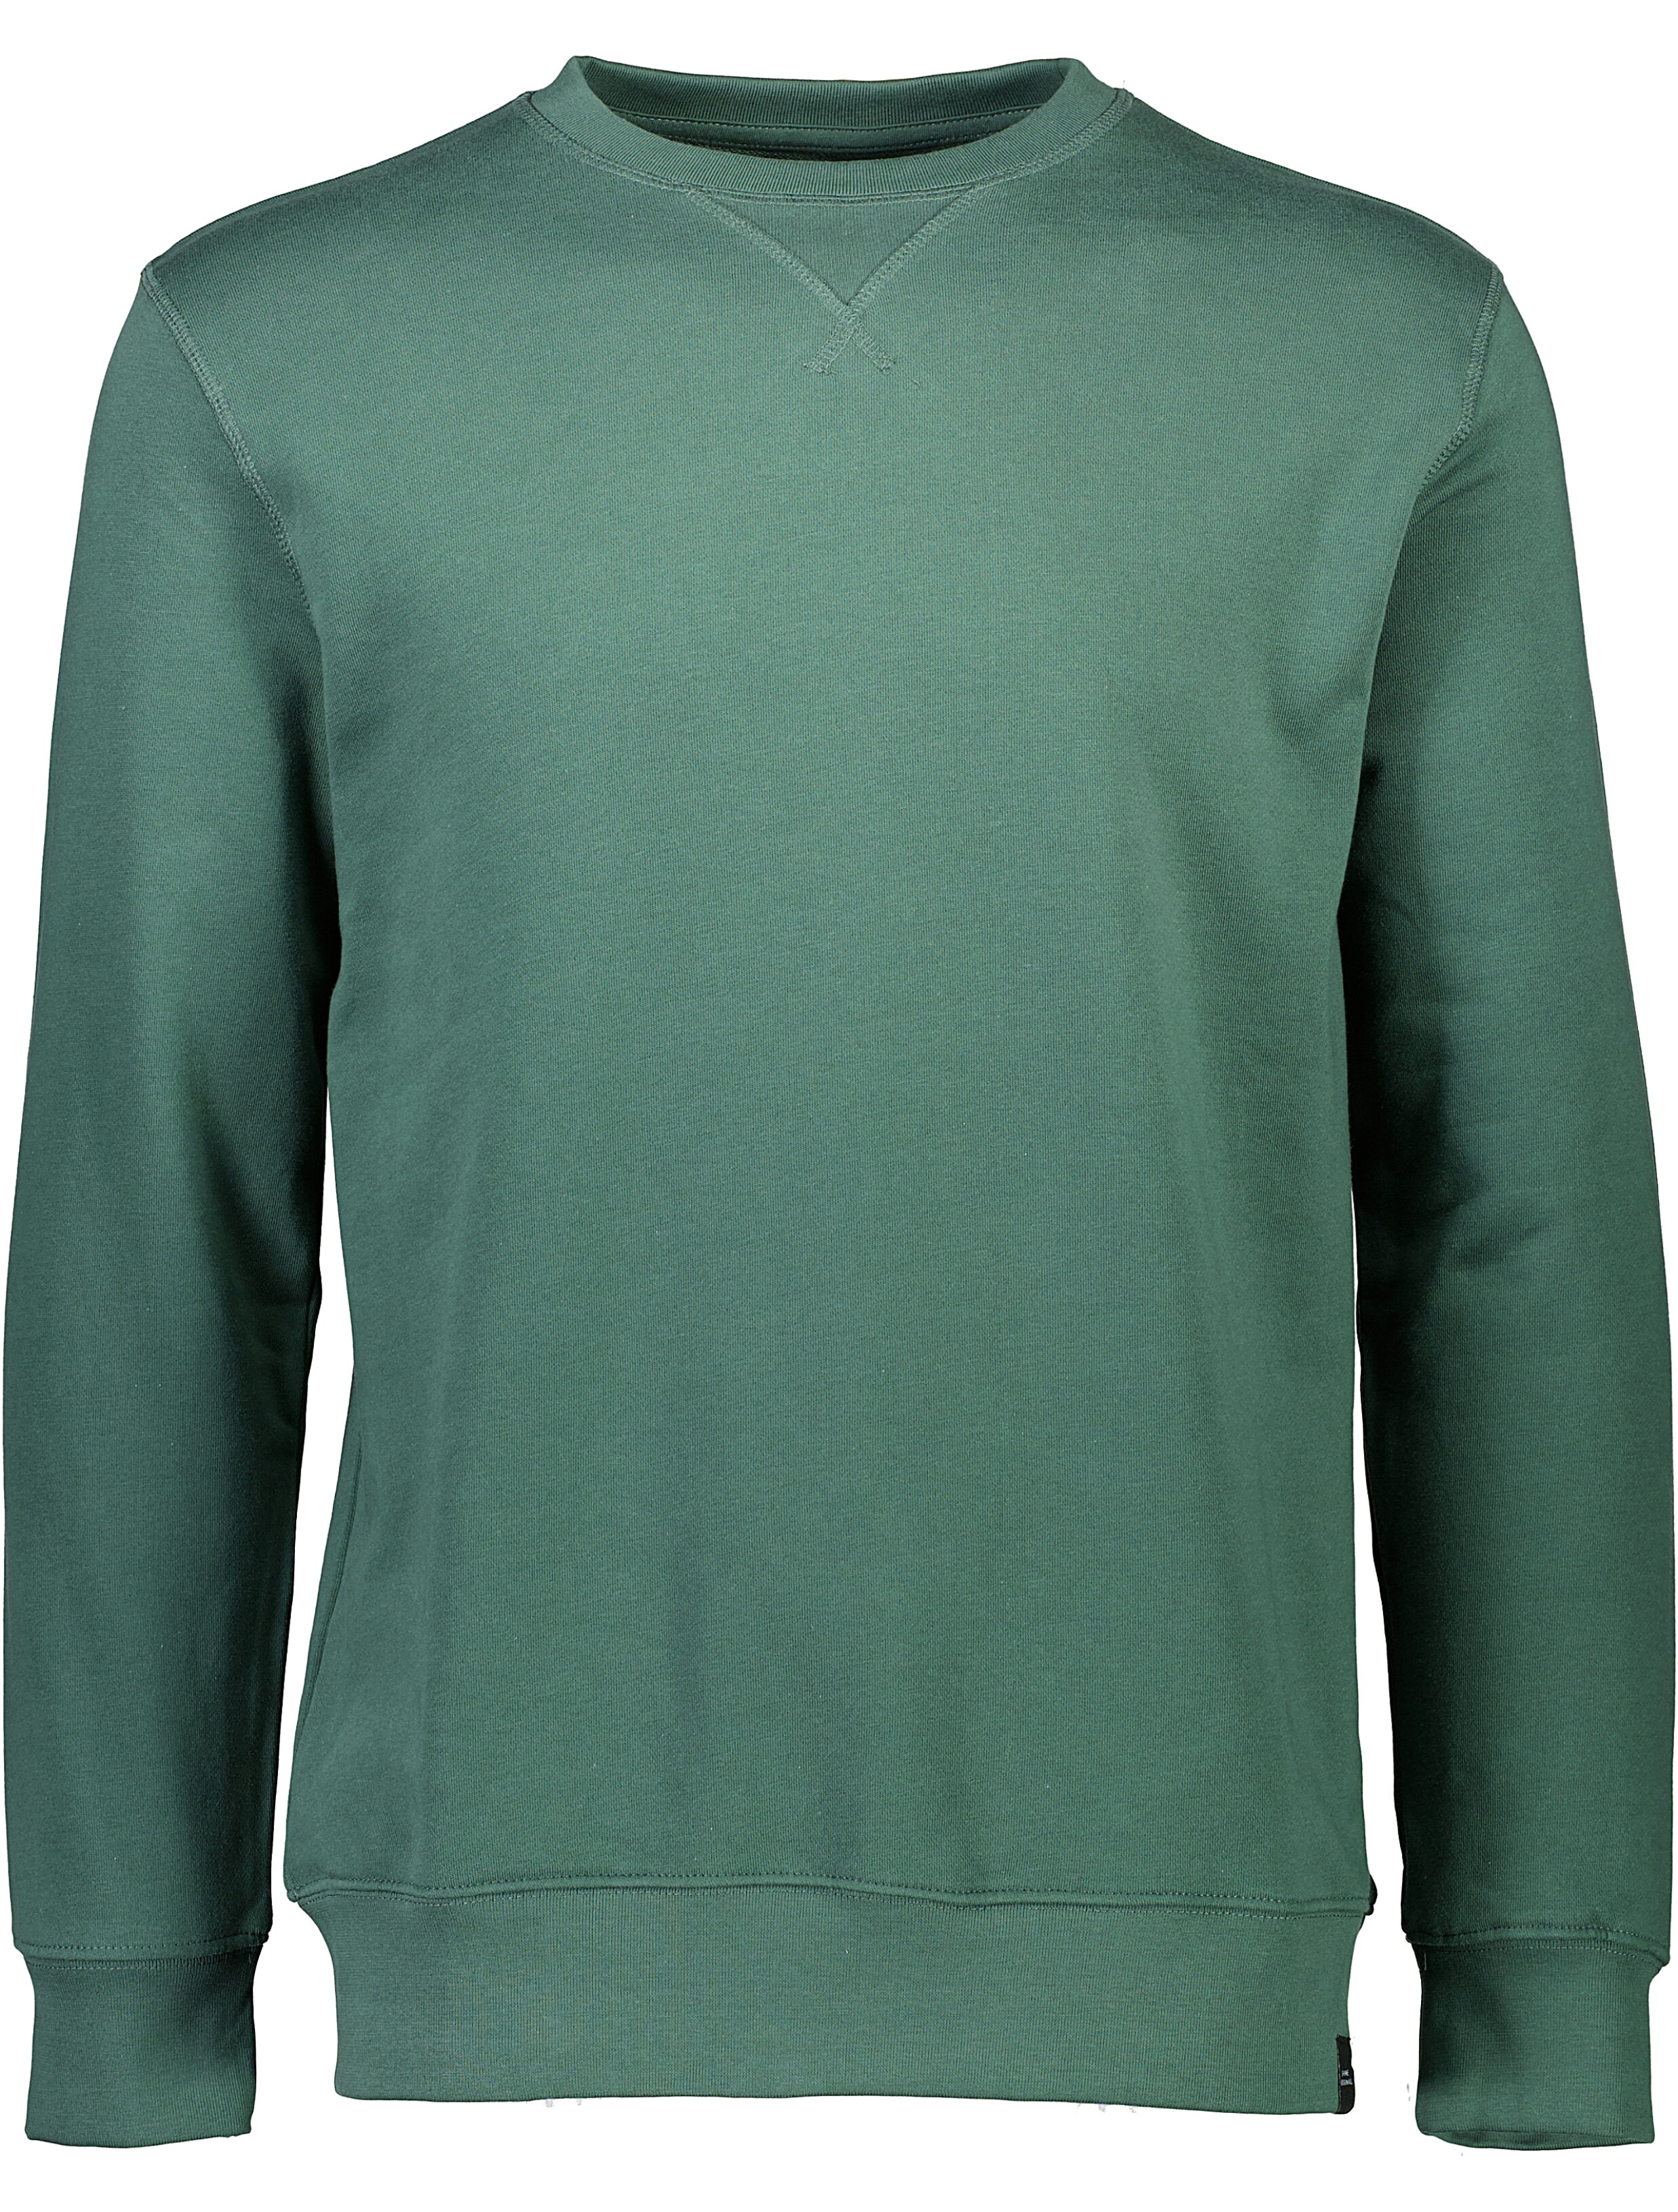 Shine Original Sweatshirt grön / green